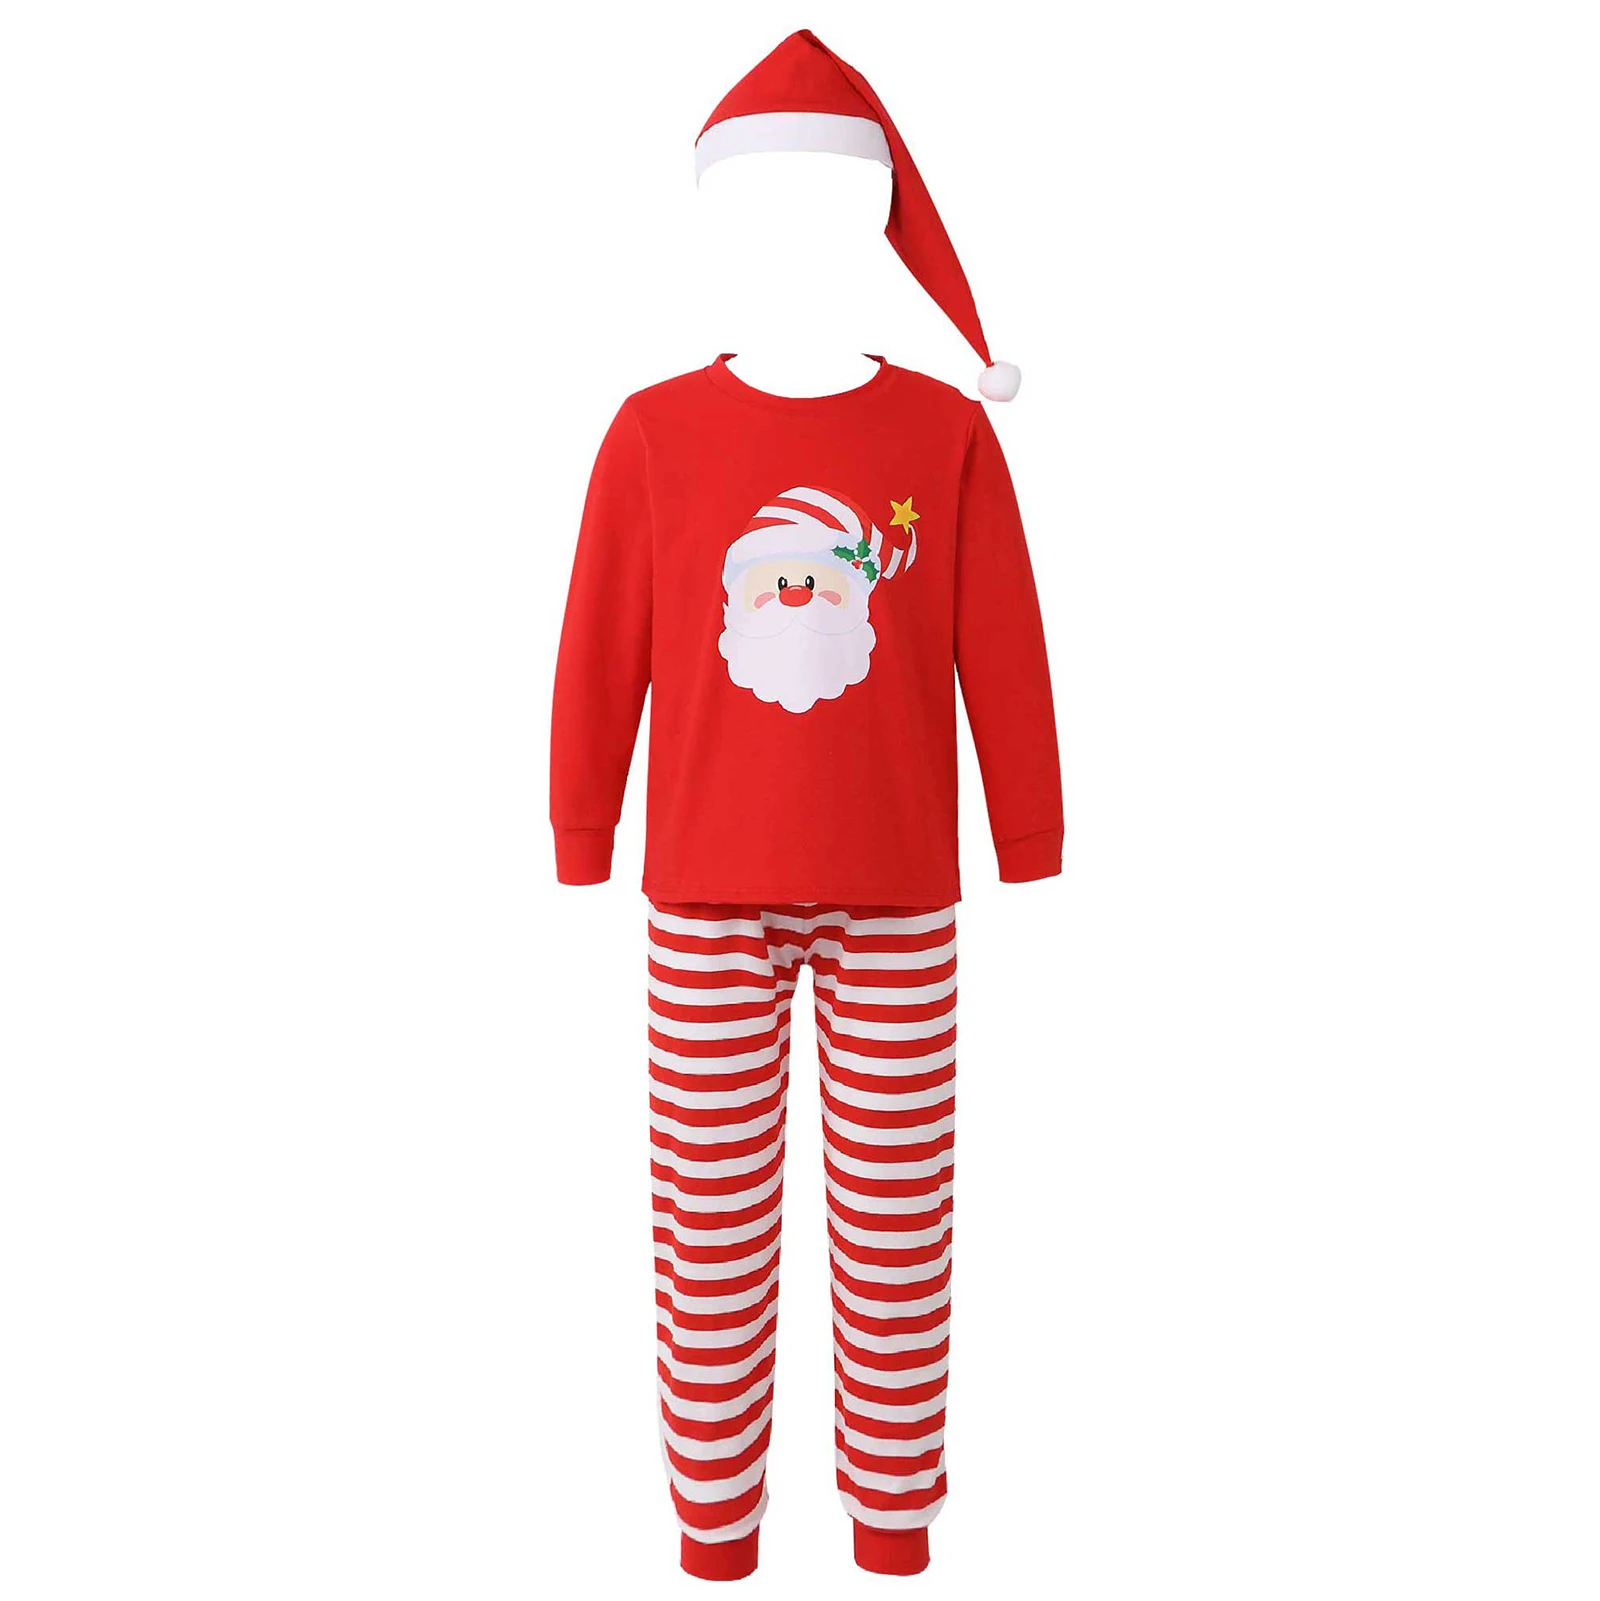 

Kids Boys Girls Christmas Pajamas Sets Children Nightwear Xmas Stripes Pijamas for 6-16Years Baby Cotton Sleepwear Pyjamas